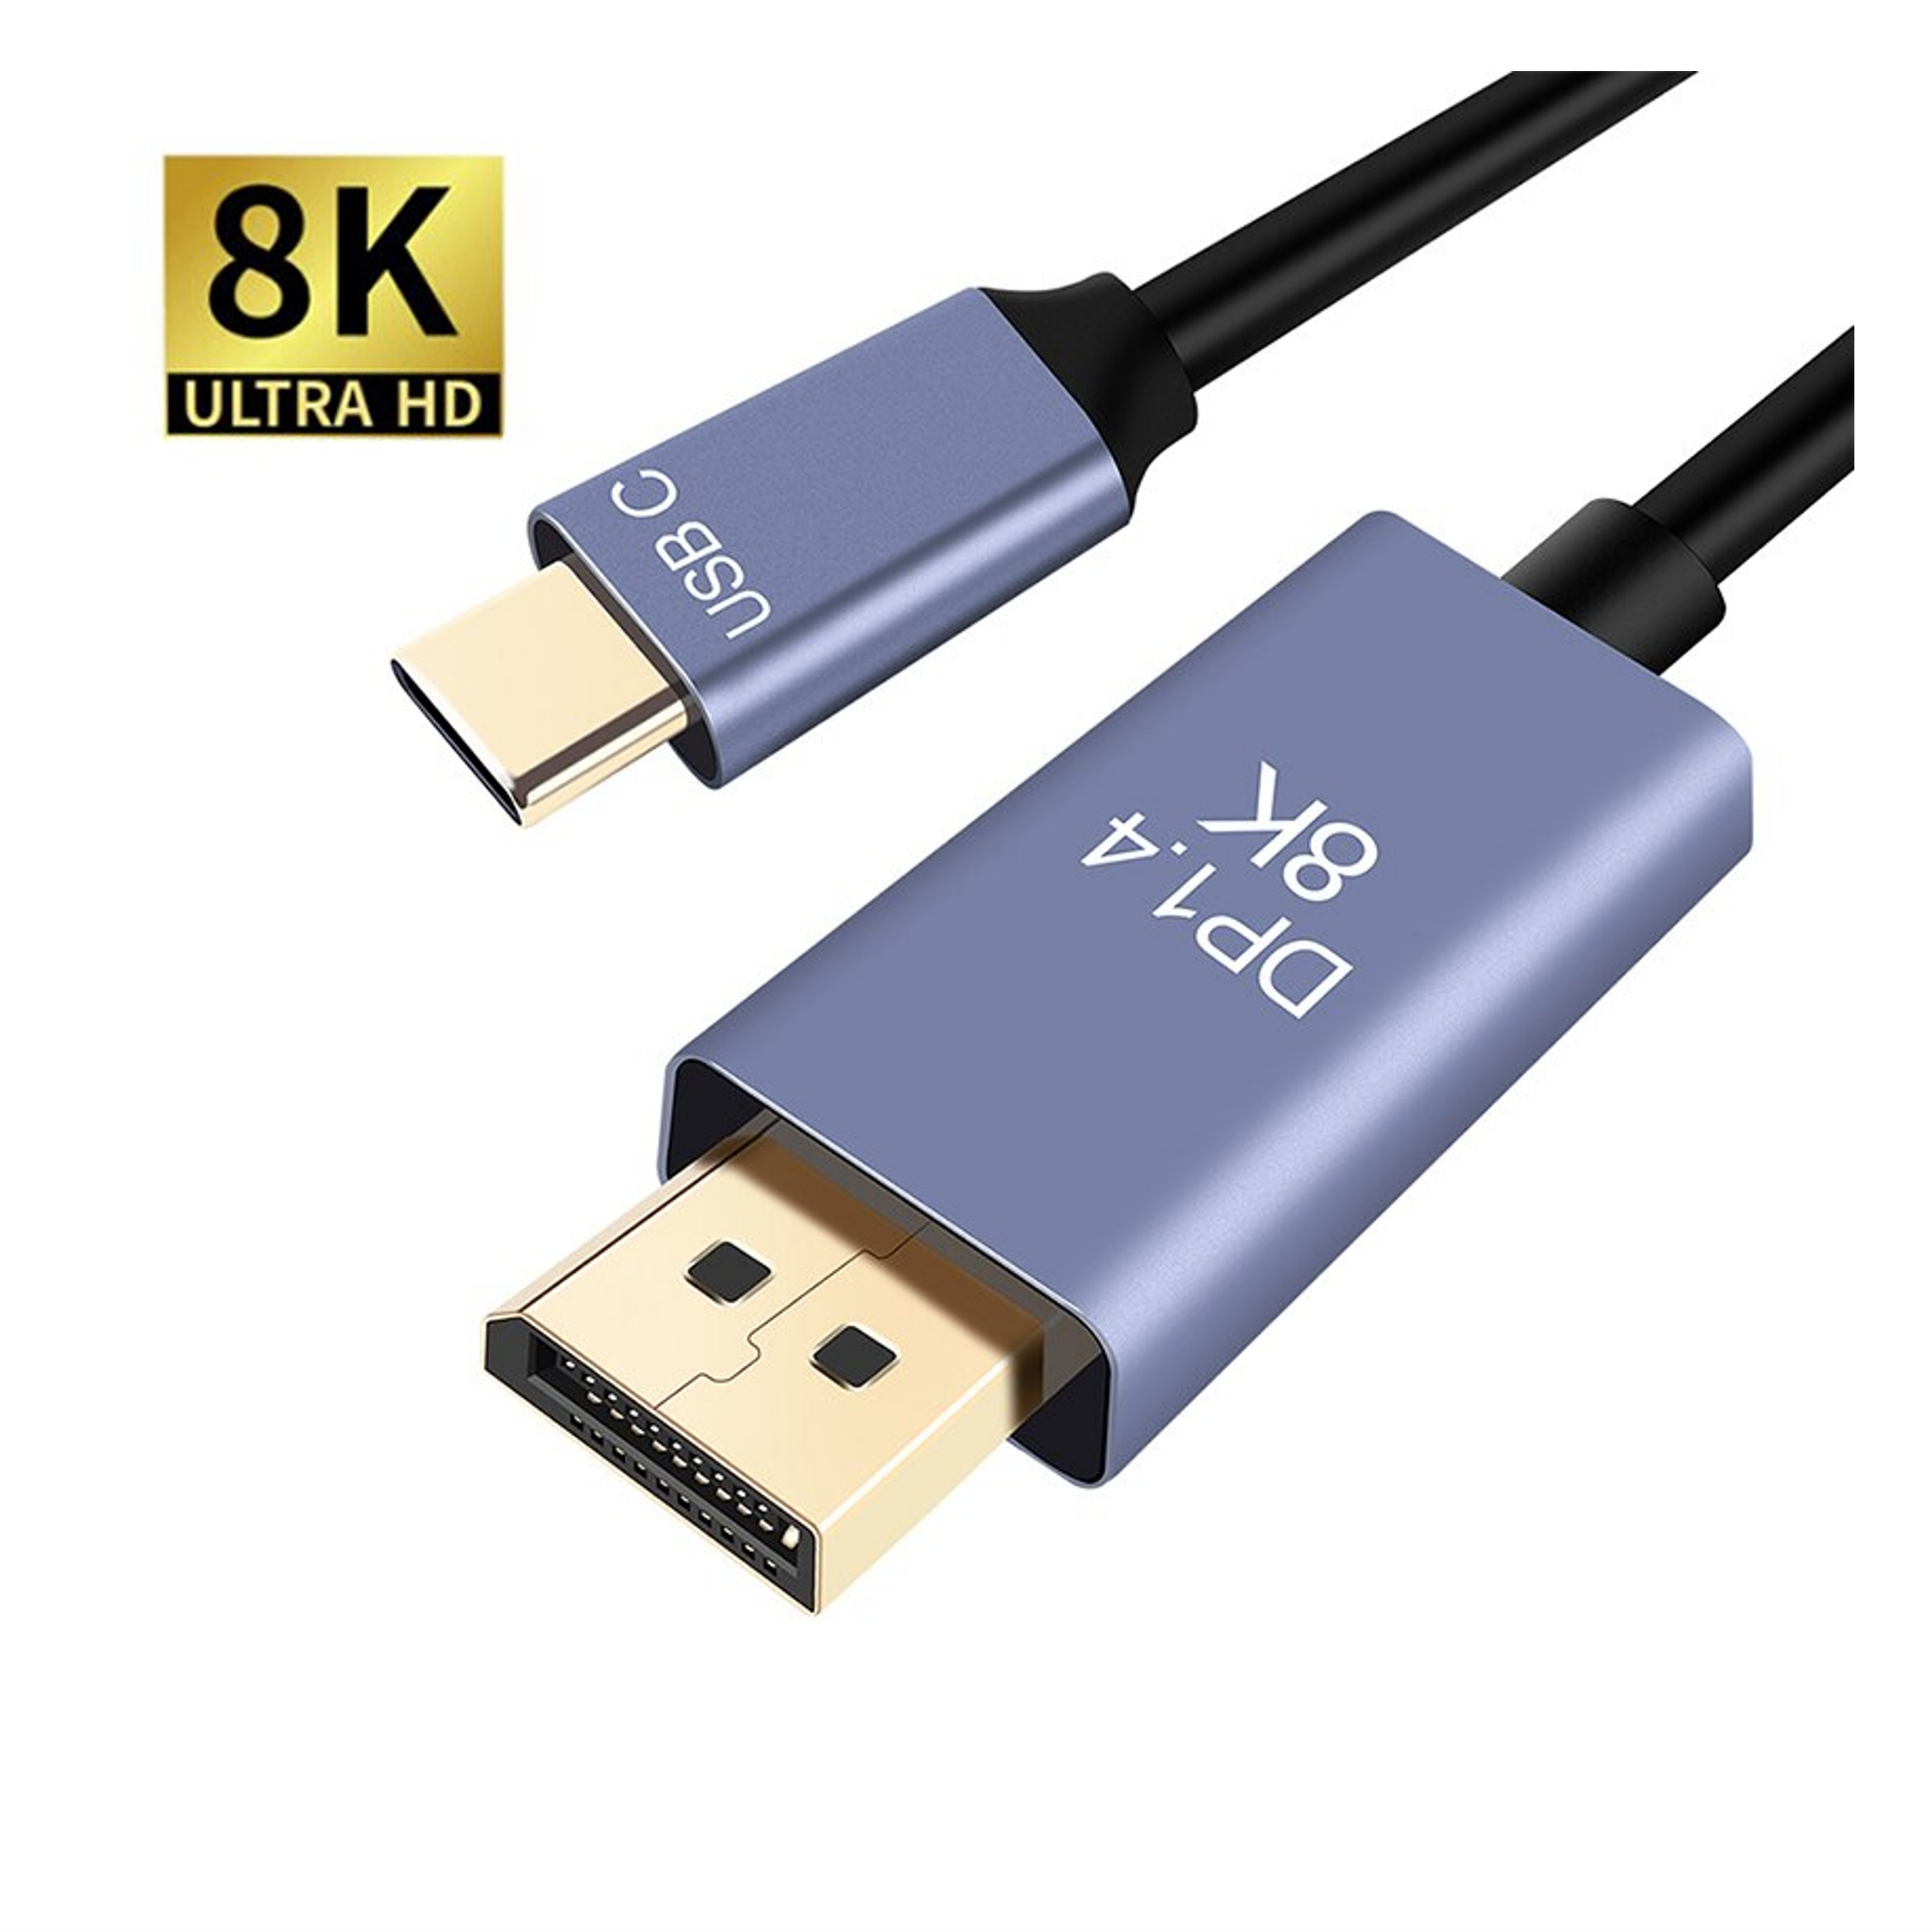 Gemengd Nauwgezet Darts USB-C naar DisplayPort 1.4 kabel (2 meter) kopen? - Dé USB-C Speciaalshop -  Morgen in huis